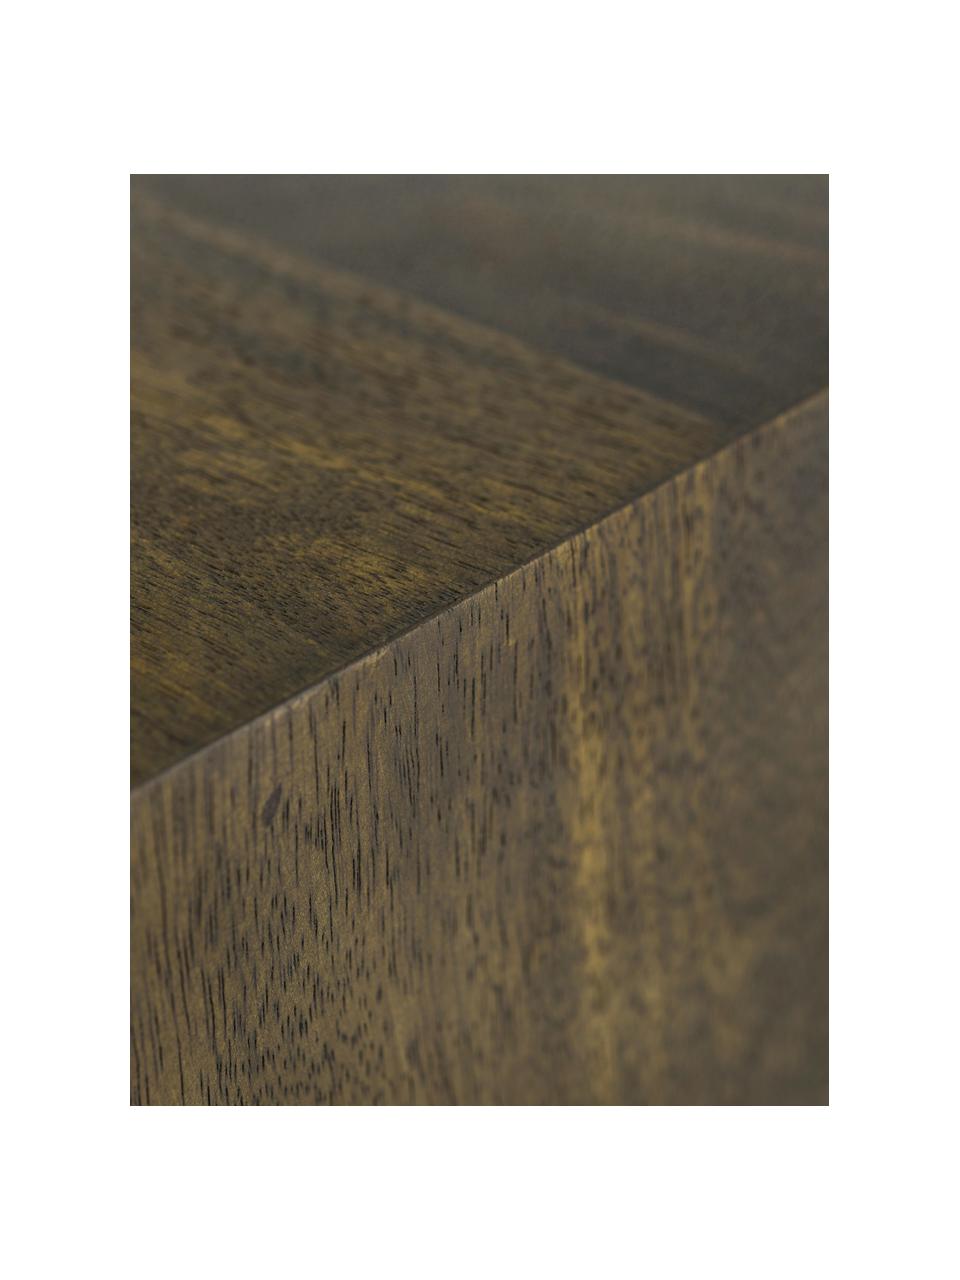 Table d'appoint bois Box, Bois de manguier, MDF (panneau en fibres de bois à densité moyenne), Bois de manguier, larg. 40 x haut. 40 cm